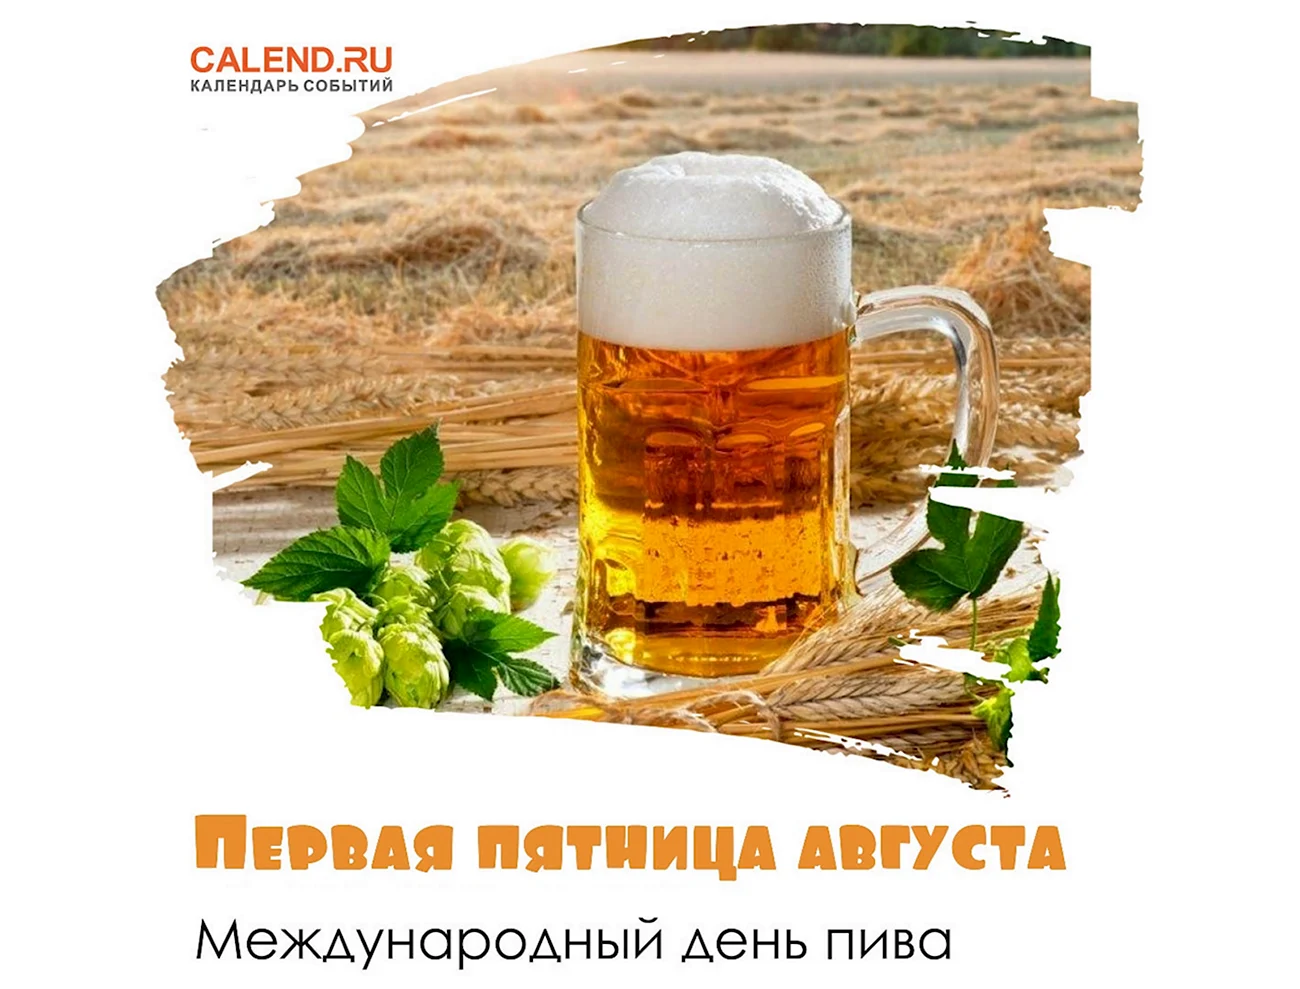 Международный день пива. Поздравление